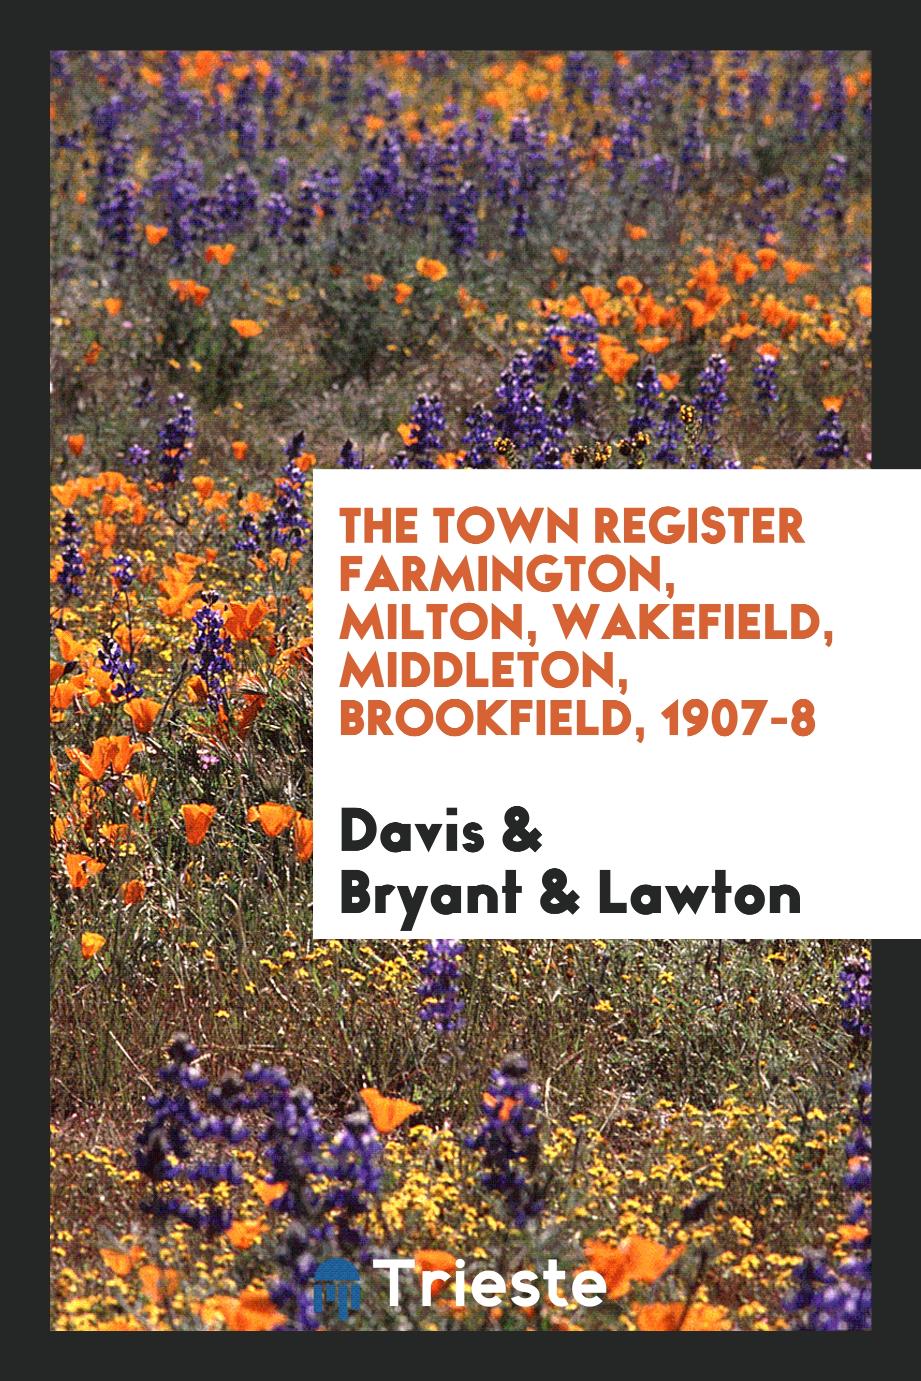 The Town Register Farmington, Milton, Wakefield, Middleton, Brookfield, 1907-8